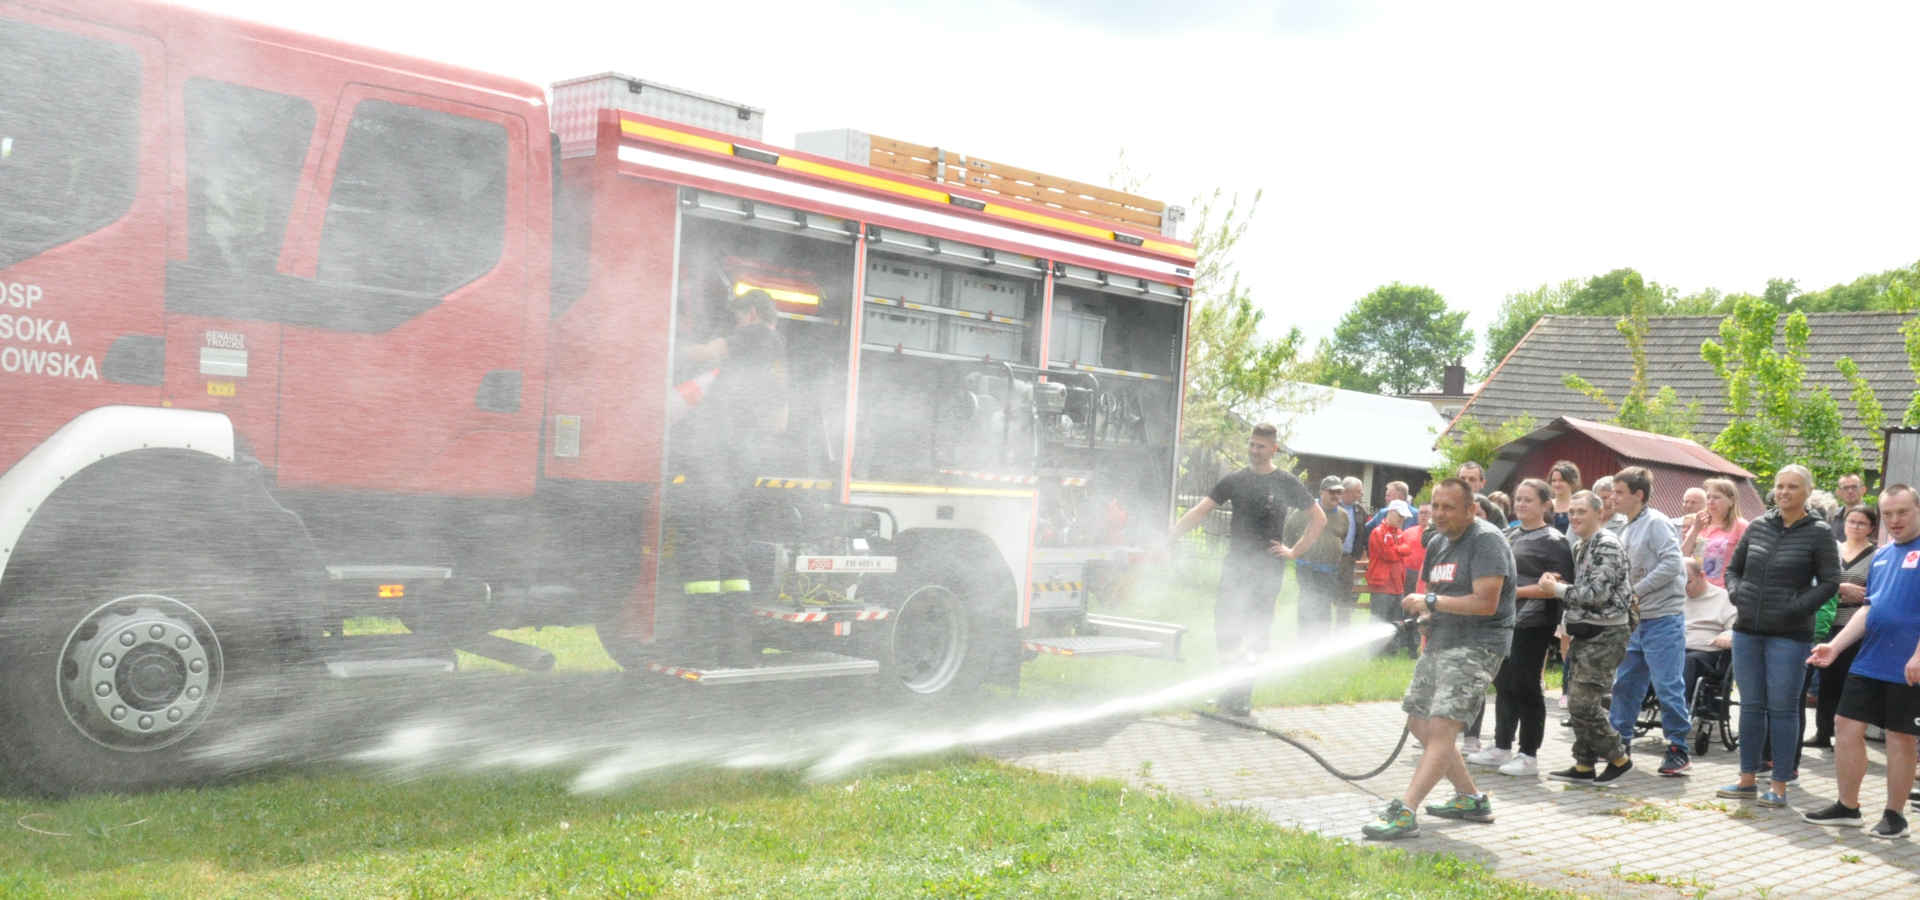 Uczestnicy pikniku przy wozie strażackim leją wodą